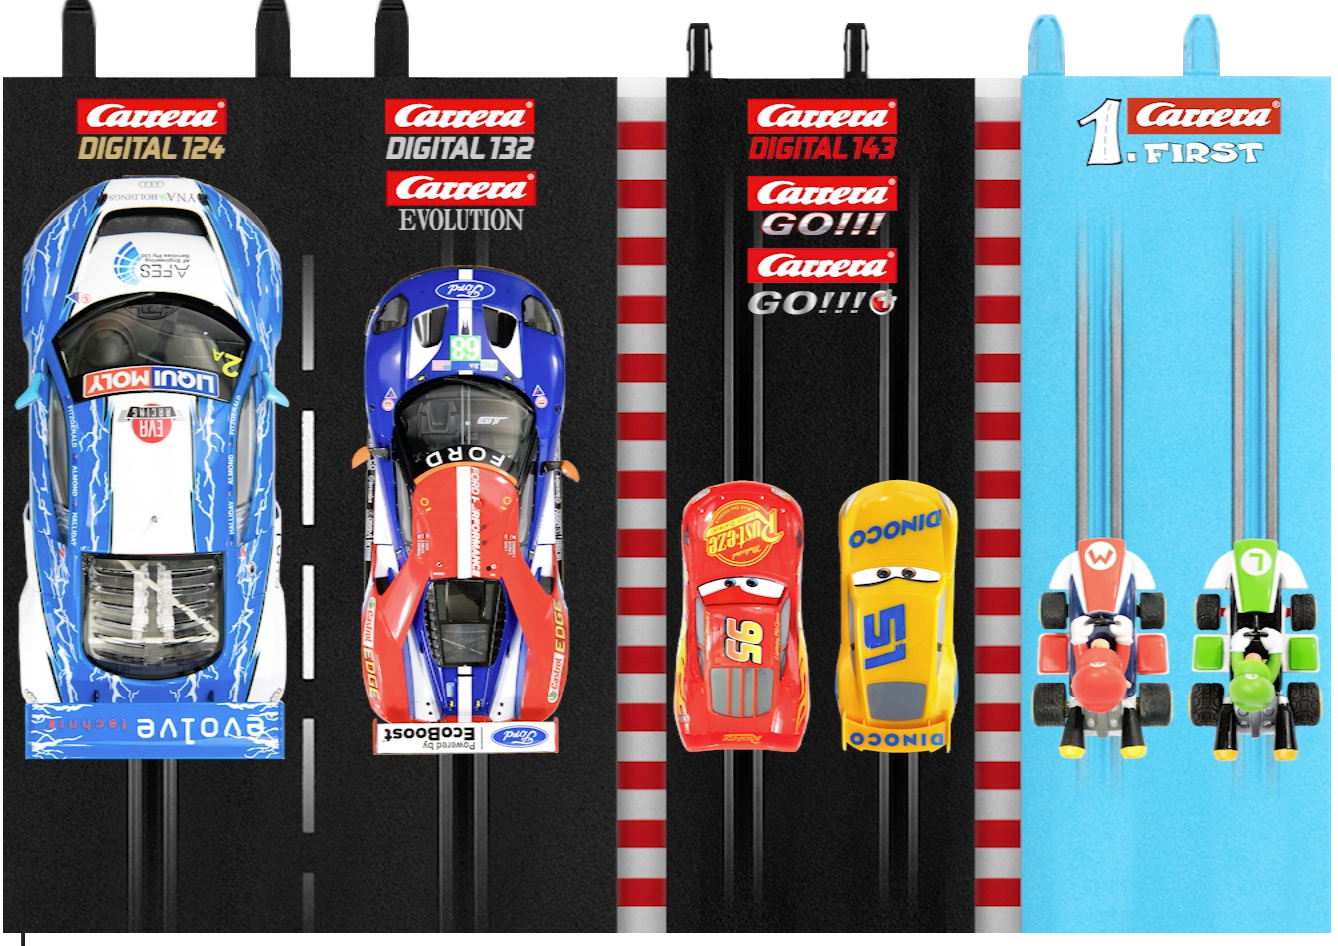 NEU !! / Digital 143 verschiedene Kurven Steilkurve zur Auswahl Carrera Go!! 